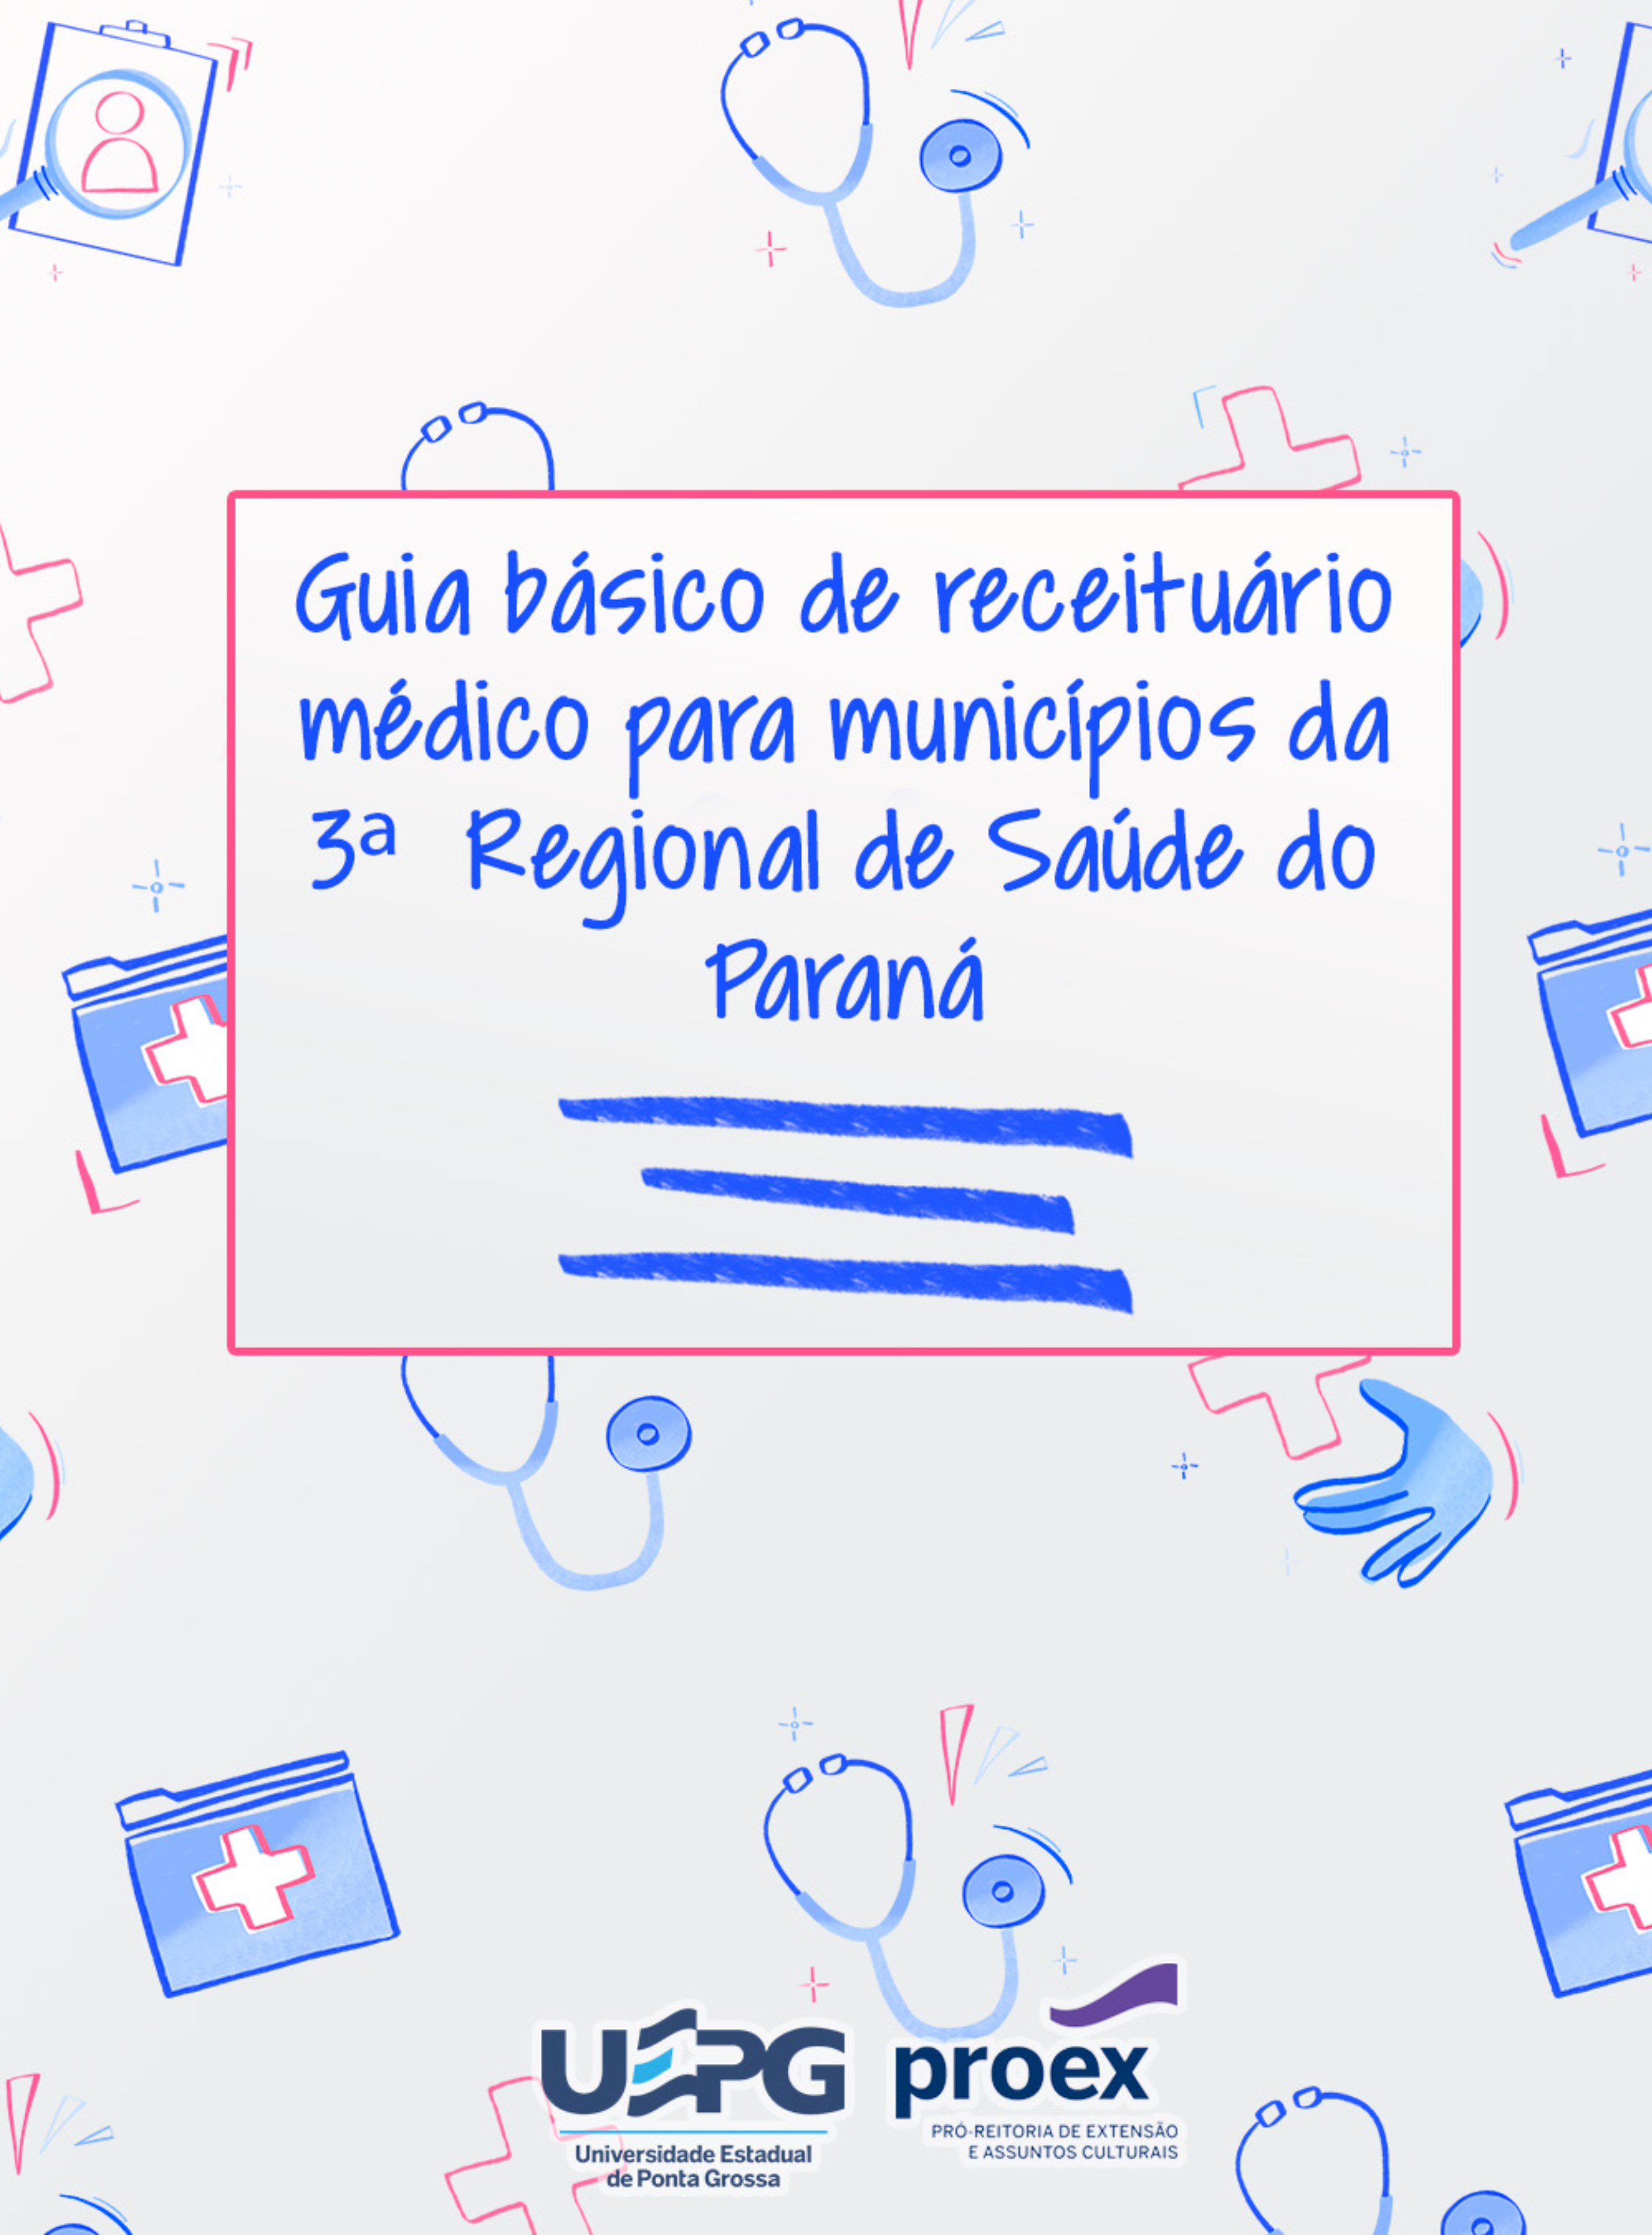 Guia básico de receituário médico para municípios da 3ª Regional de Saúde do Paraná